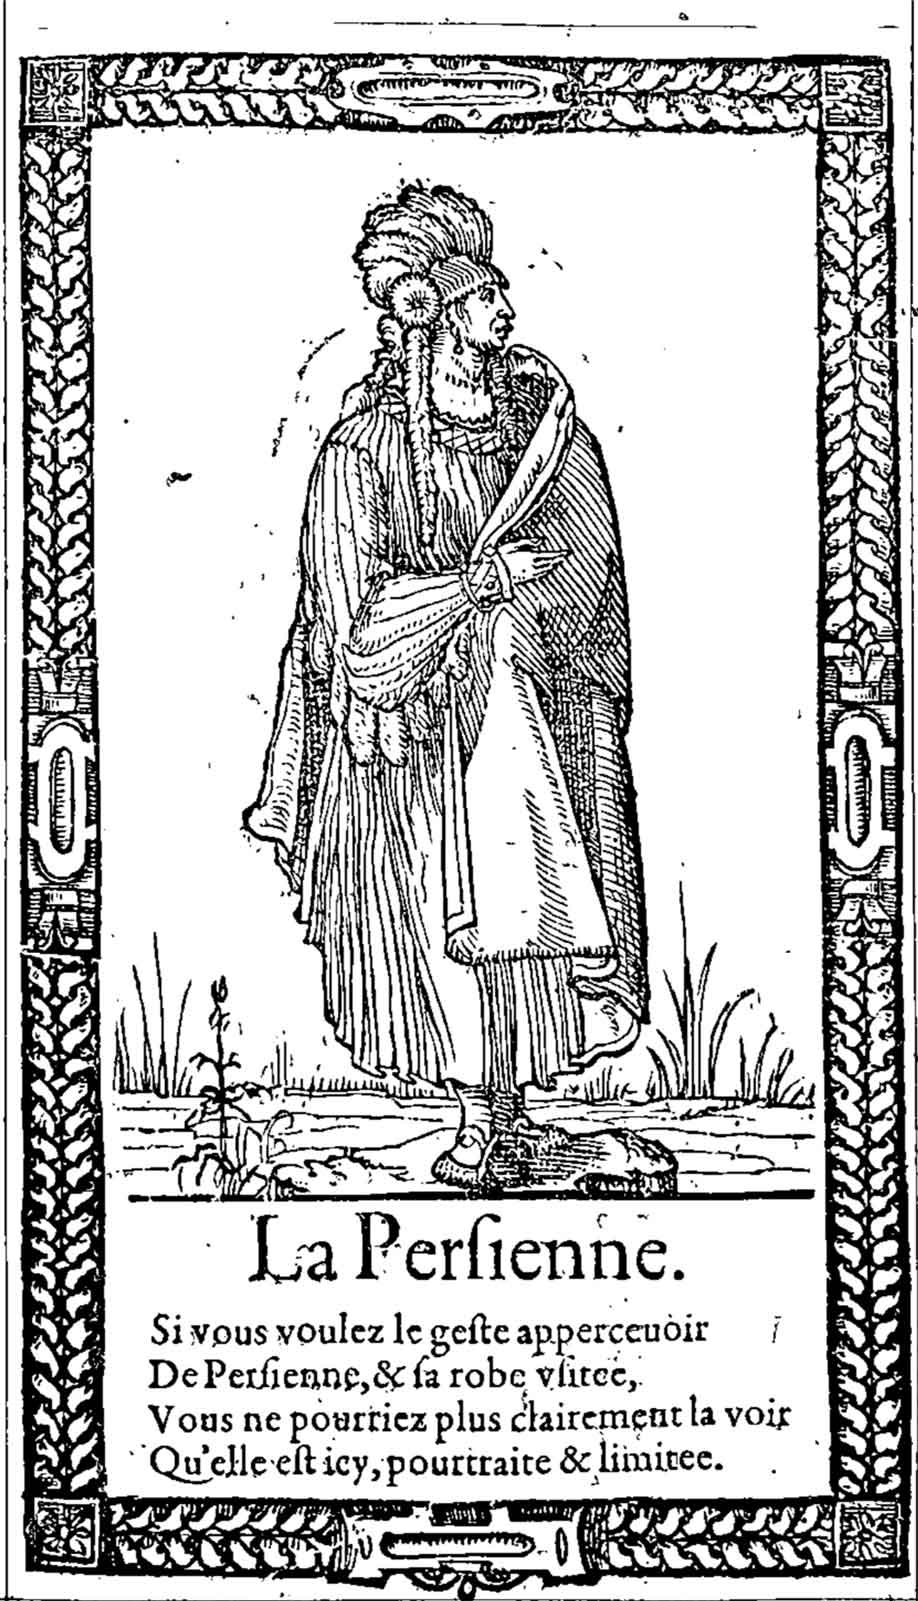 La Persienne. Desprez, Recueil de la diversité des habits (1564)